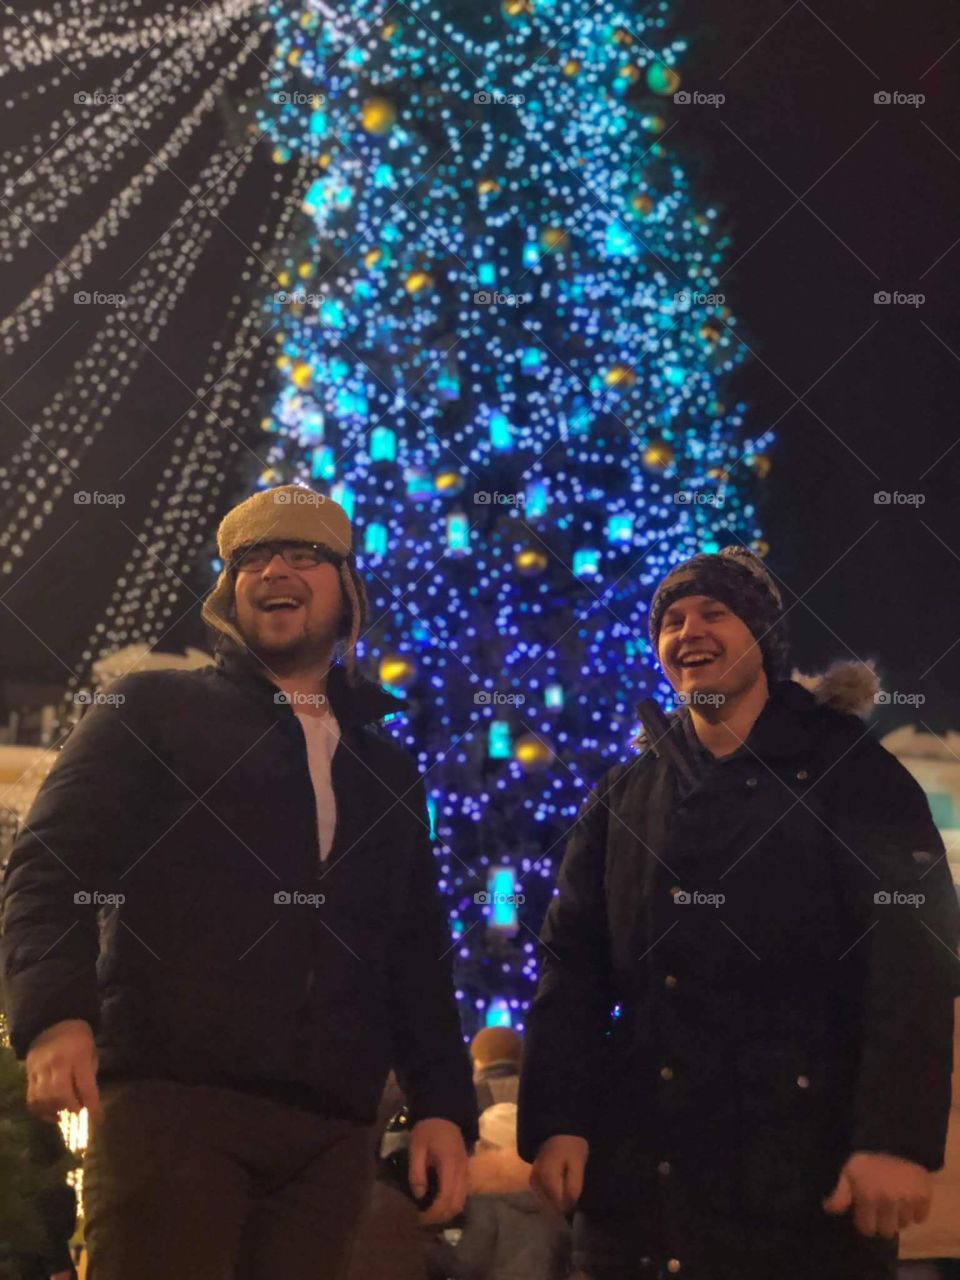 Amazing Christmas with friends! Kiev, Ukraine 2018